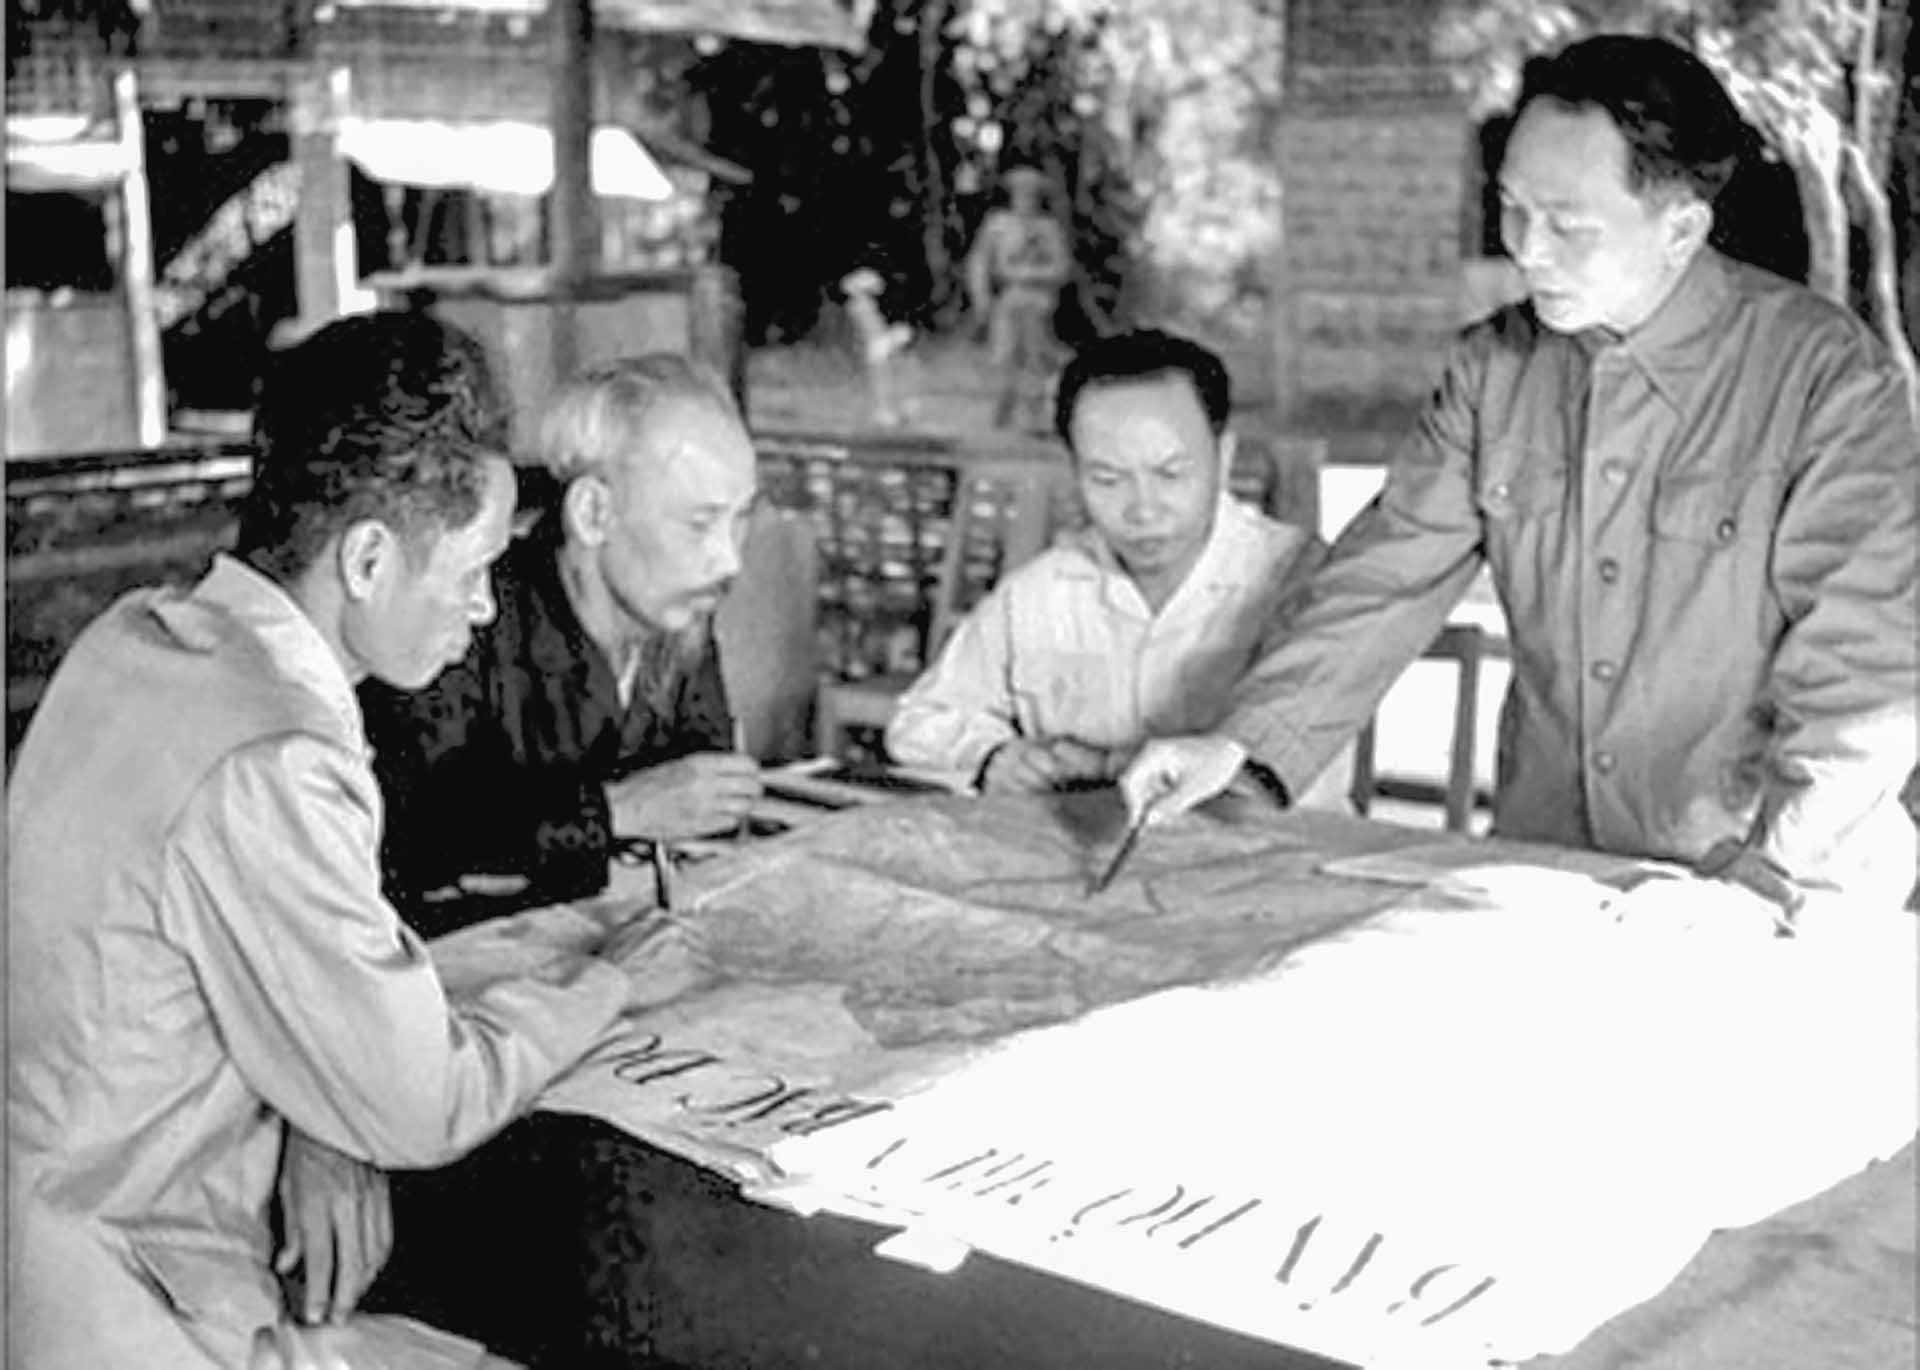 Đại tướng Võ Nguyên Giáp trình bày với Chủ tịch Hồ Chí Minh và các đồng chí lãnh đạo Đảng, Nhà nước kế hoạch mở chiến dịch Điện Biên Phủ năm 1954.